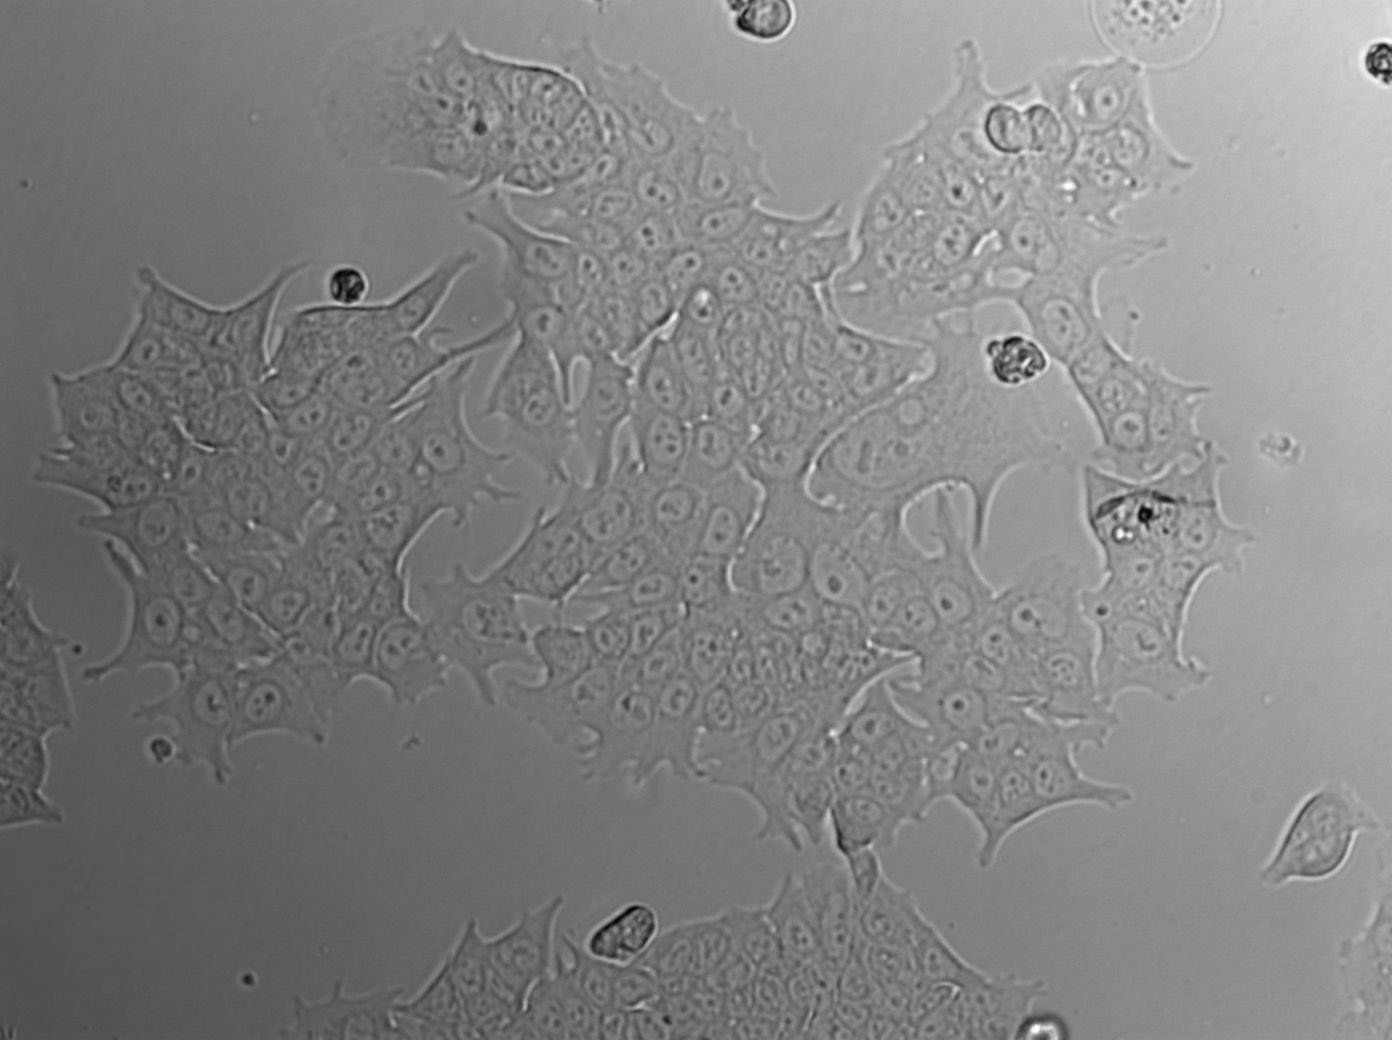 CAL-62 Epithelial Cell|人甲状腺癌传代细胞(有STR鉴定),CAL-62 Epithelial Cell